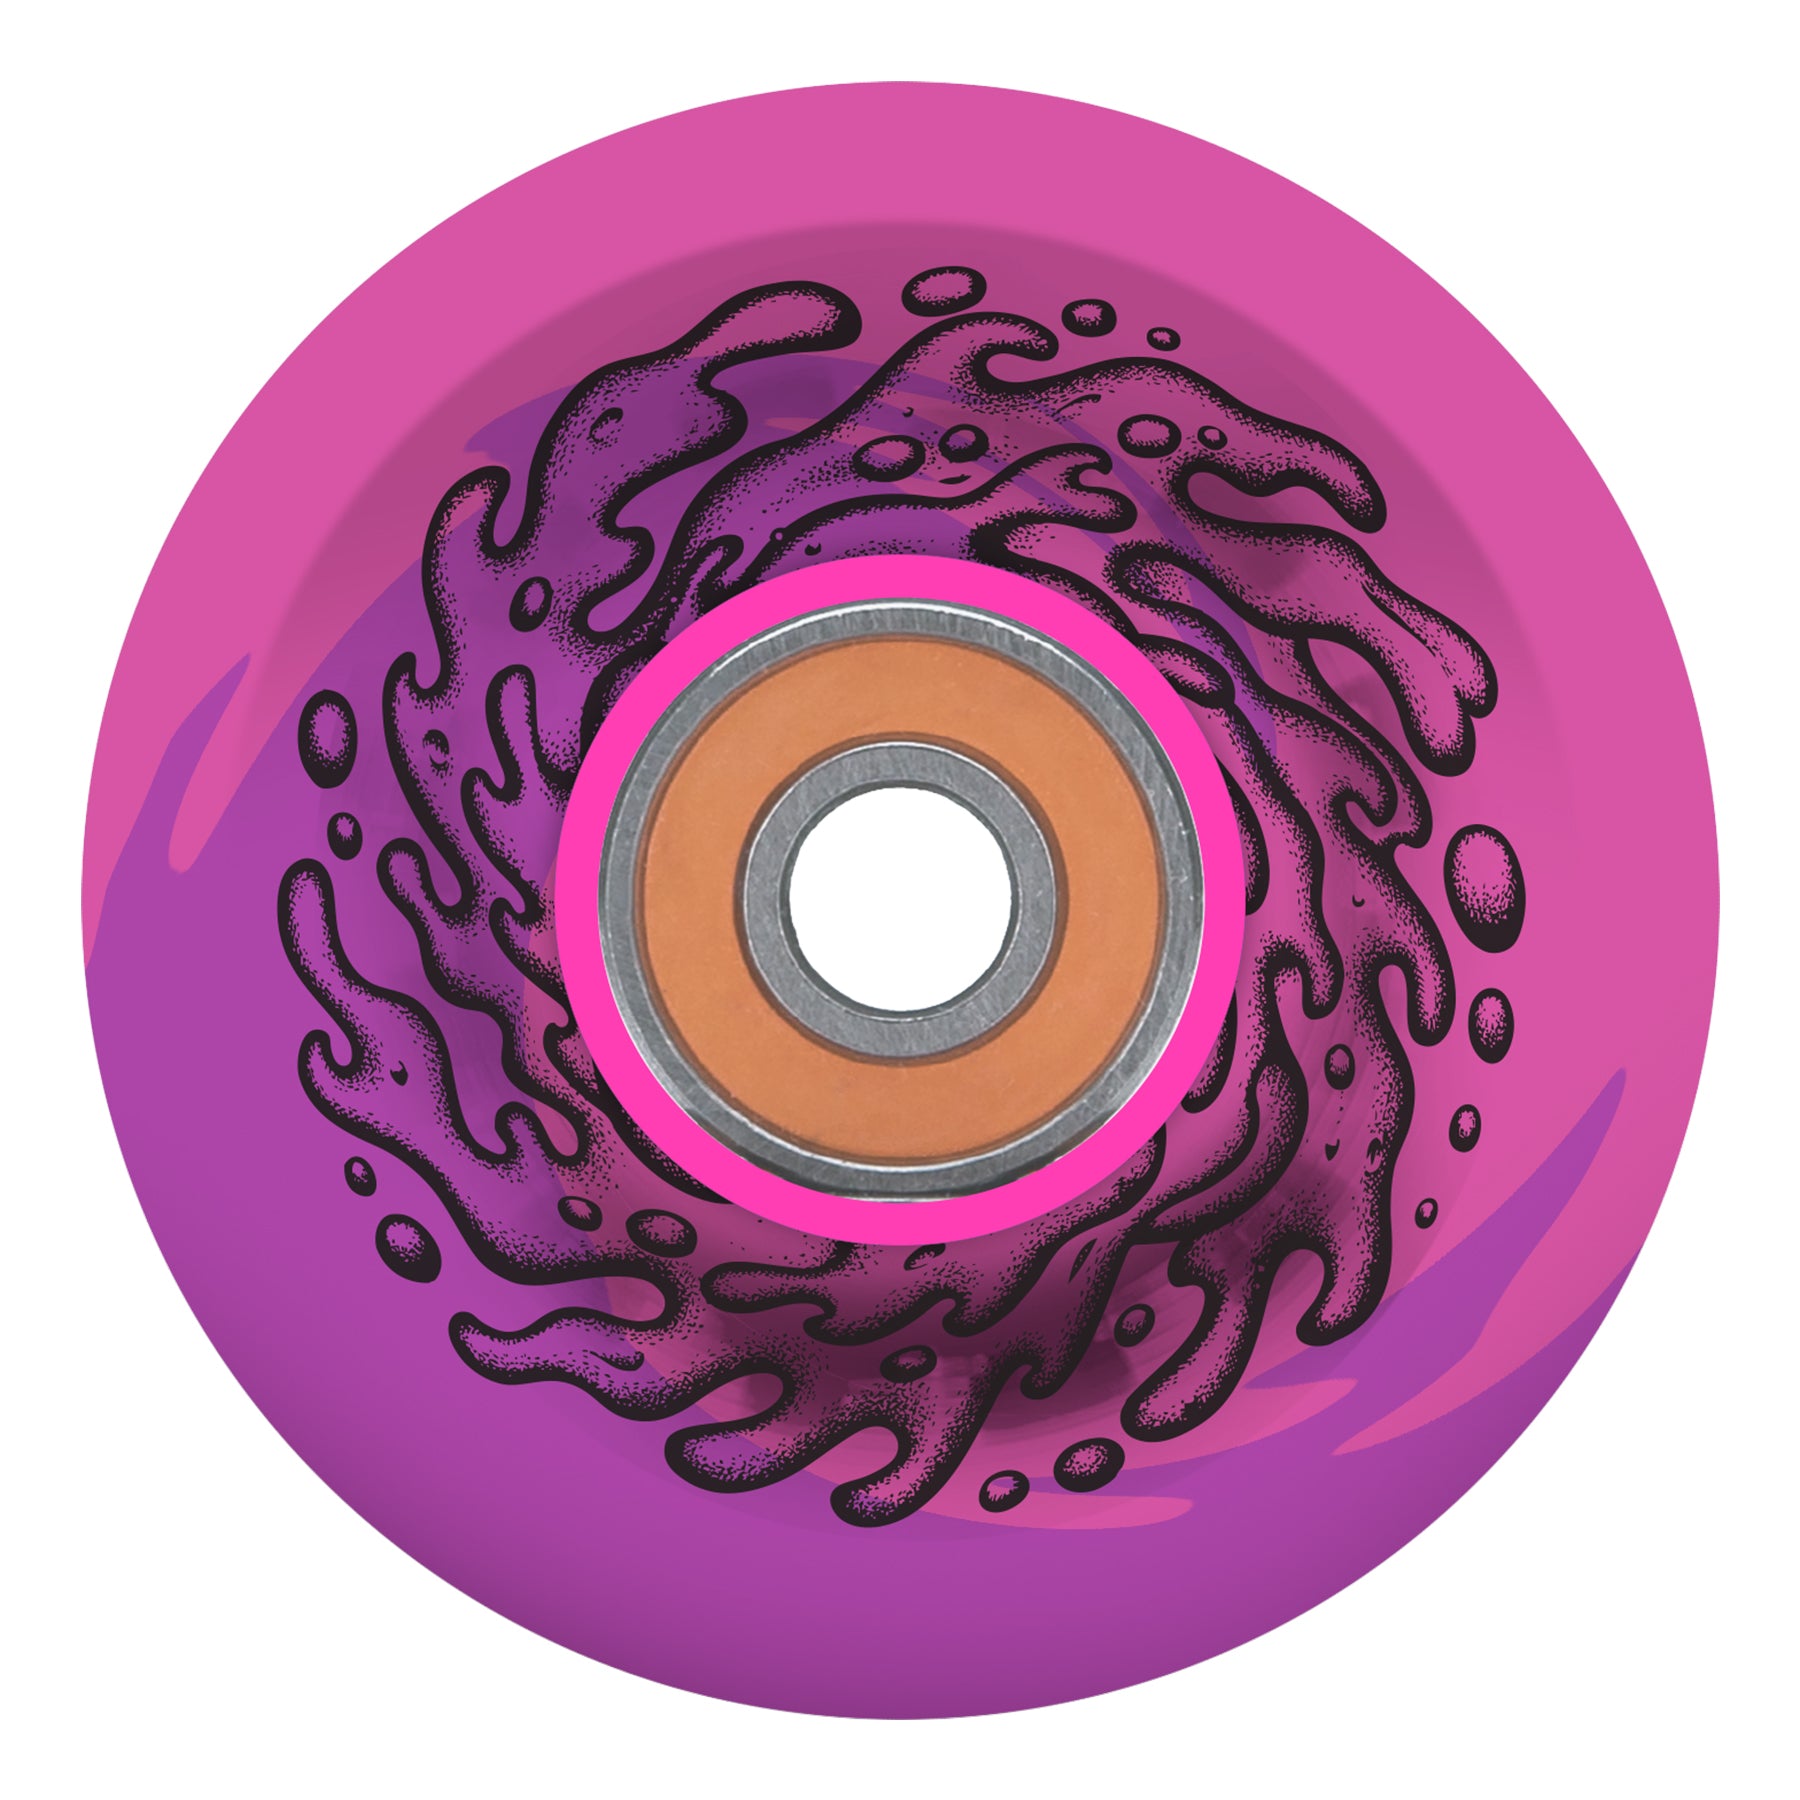 Slime Balls Wheels Light Ups OG Slime, Pink/Purple, 60mm/78a